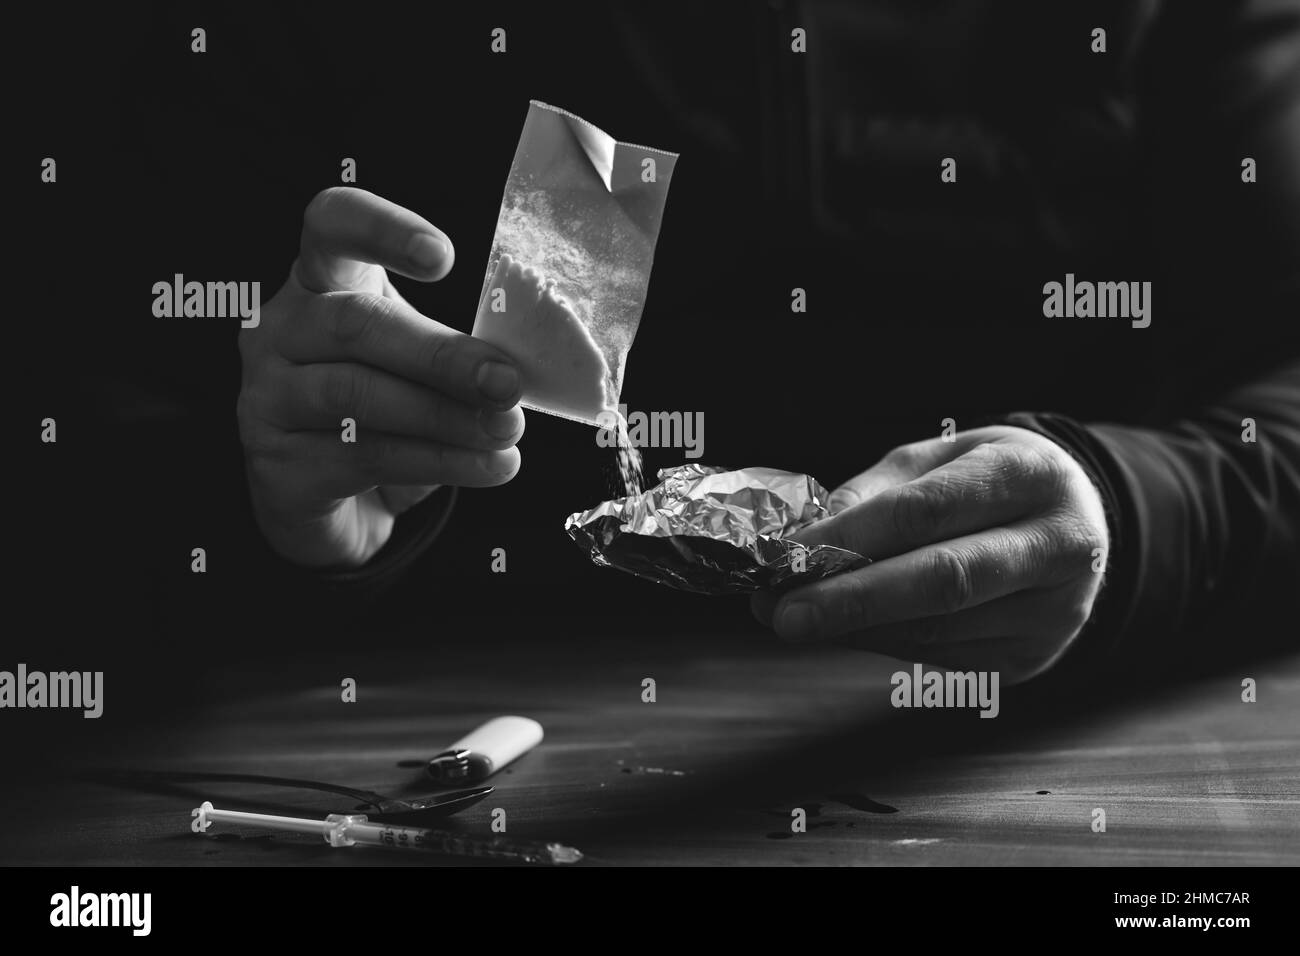 Addict/junkie homme préparant des drogues.Le concept de la criminalité et de la toxicomanie. Banque D'Images